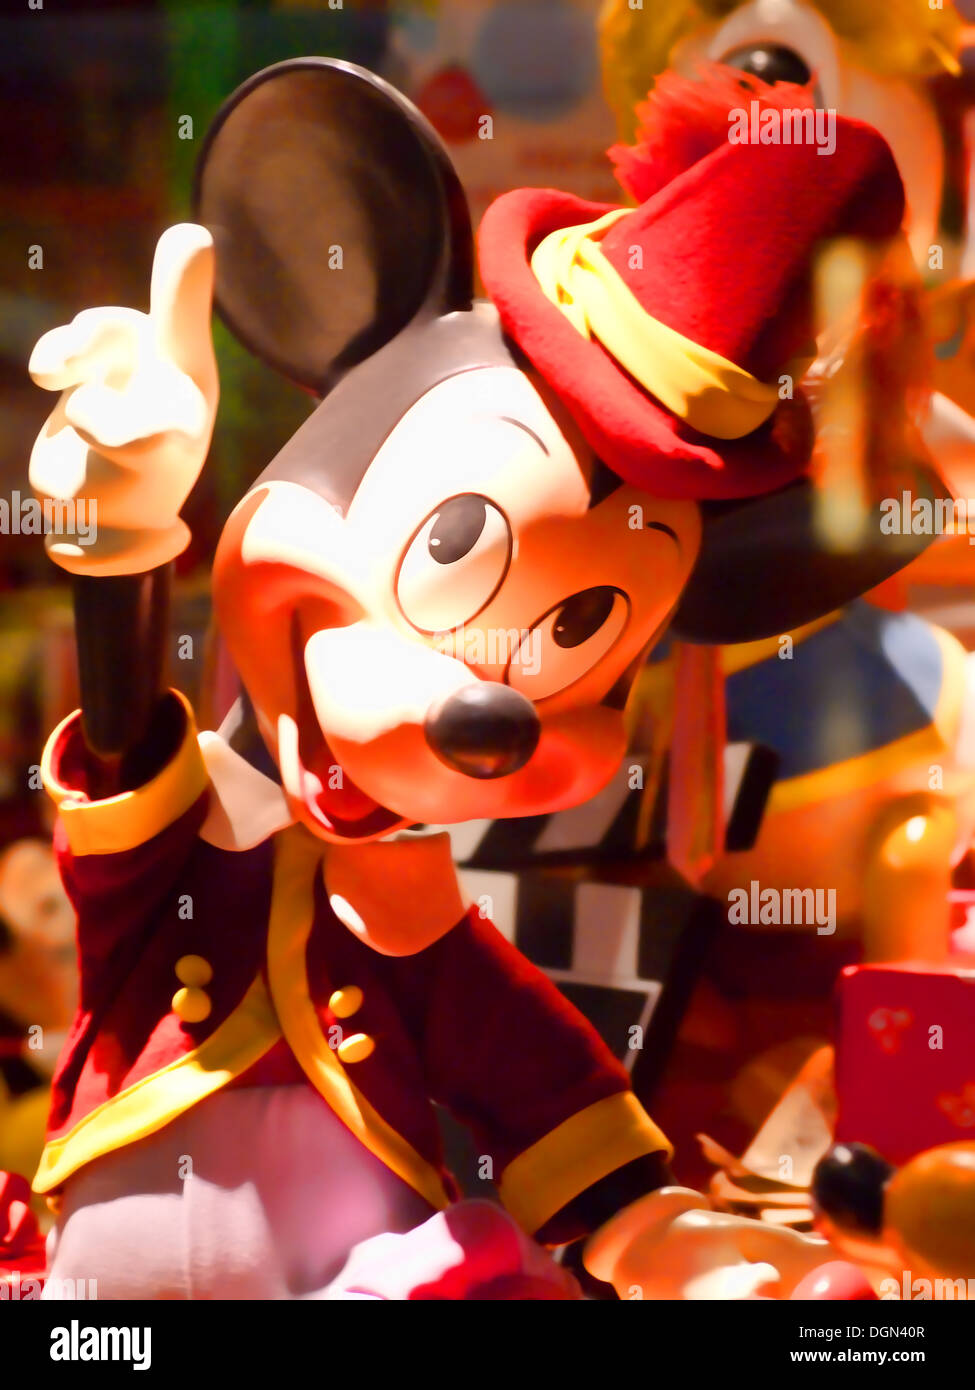 Statue von mickey mouse in einem Spielzeugladen Stockfoto